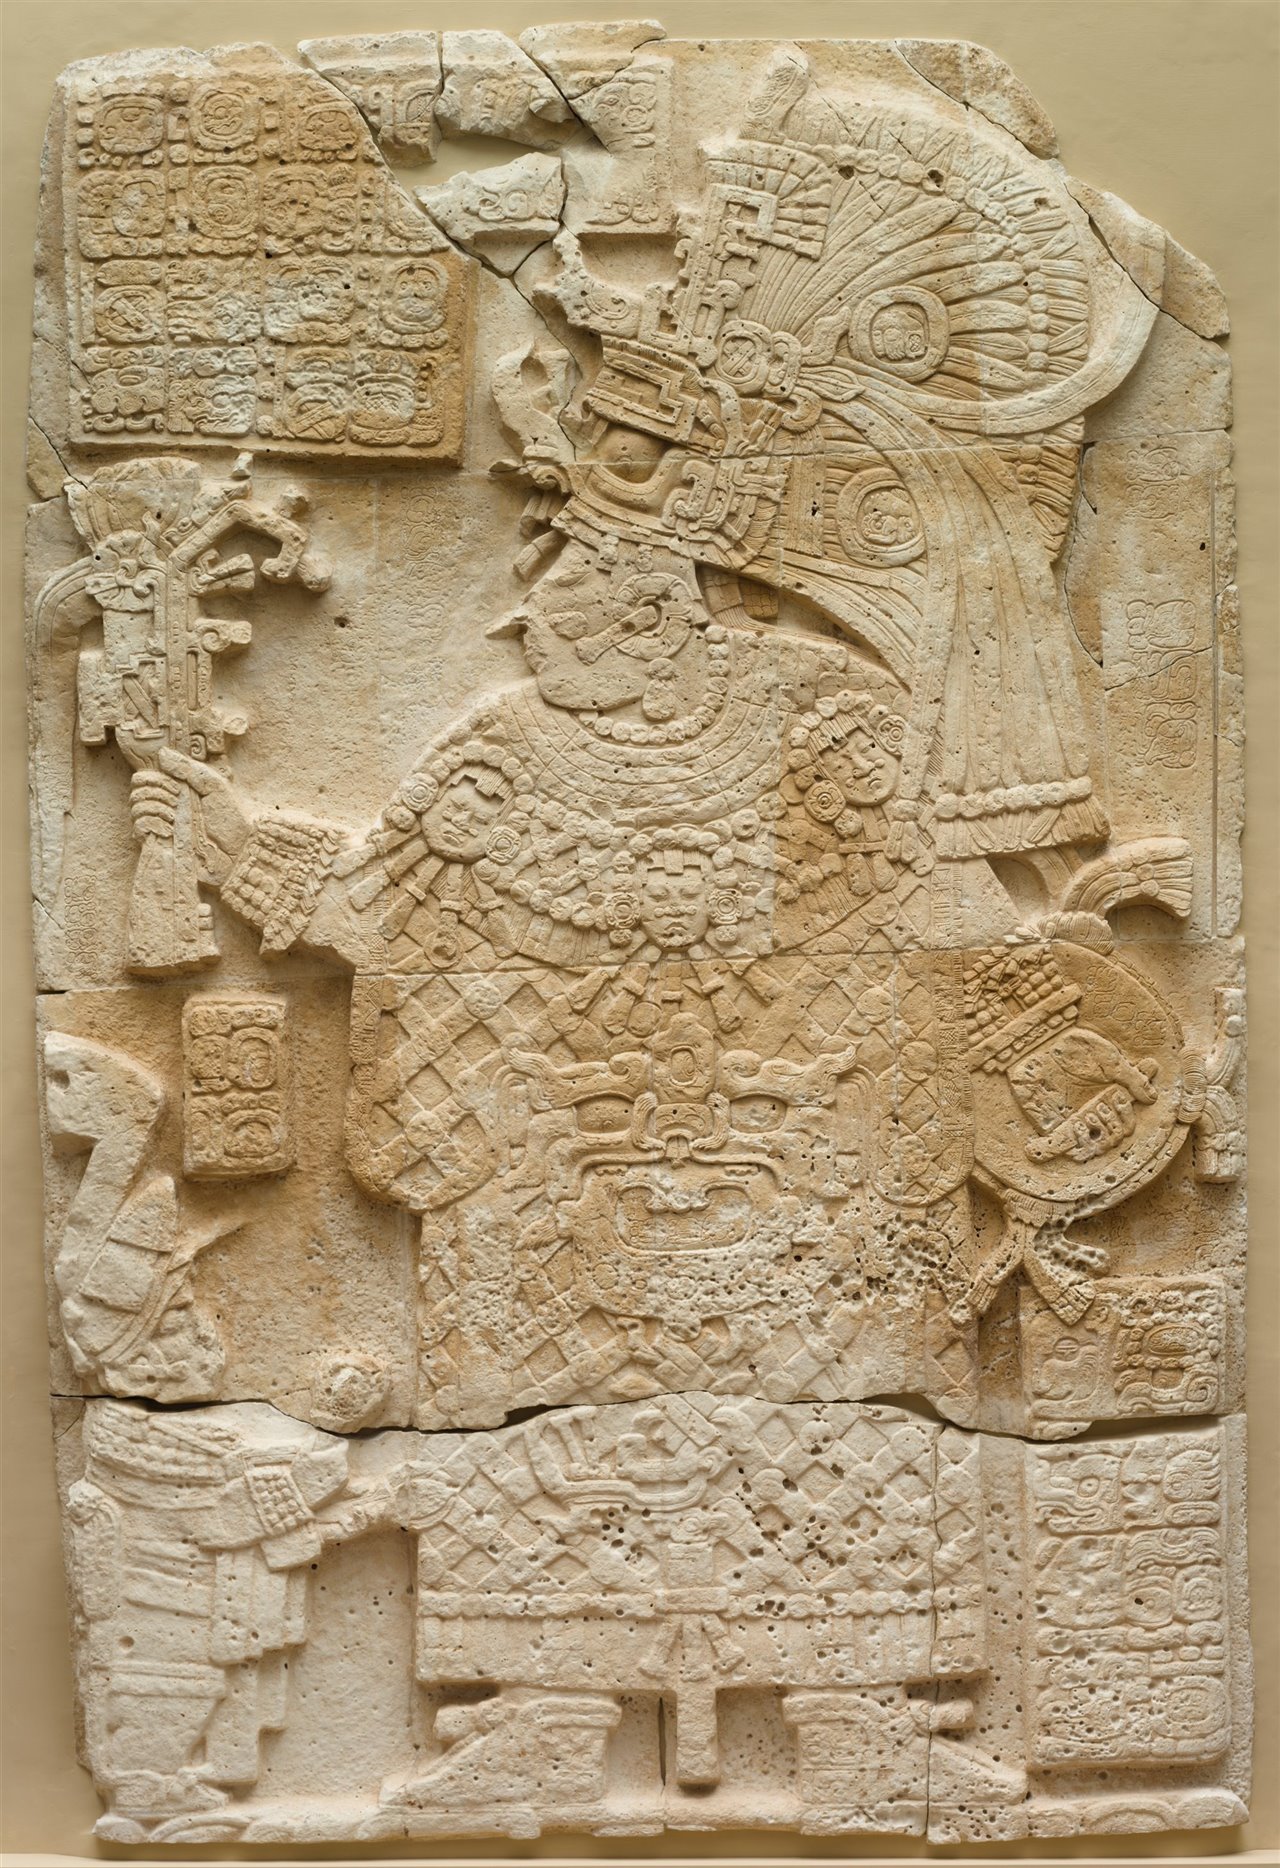 Mayan stucco